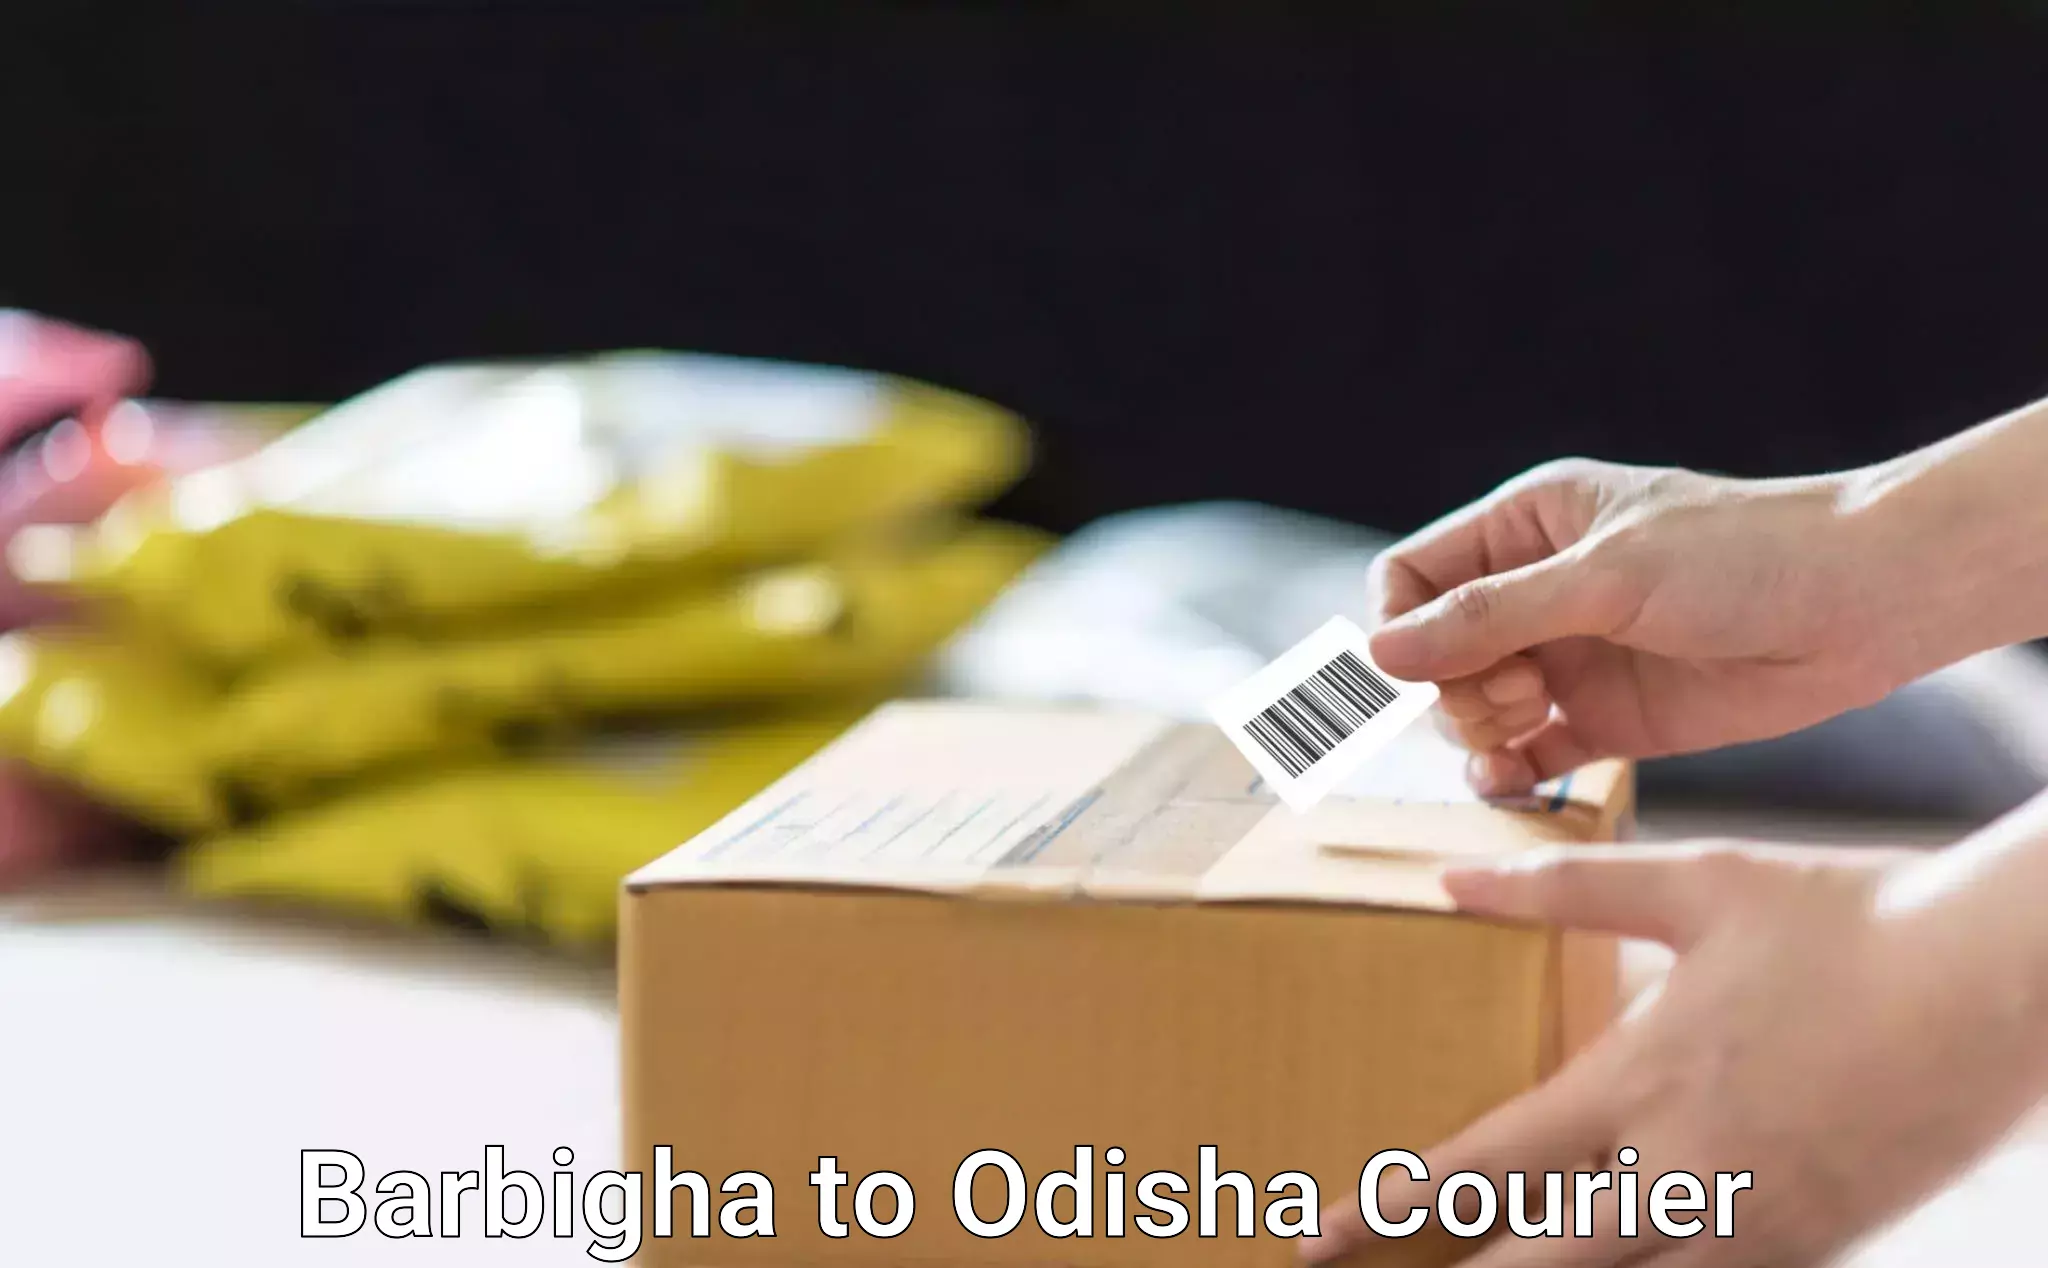 Home goods moving company Barbigha to Odisha